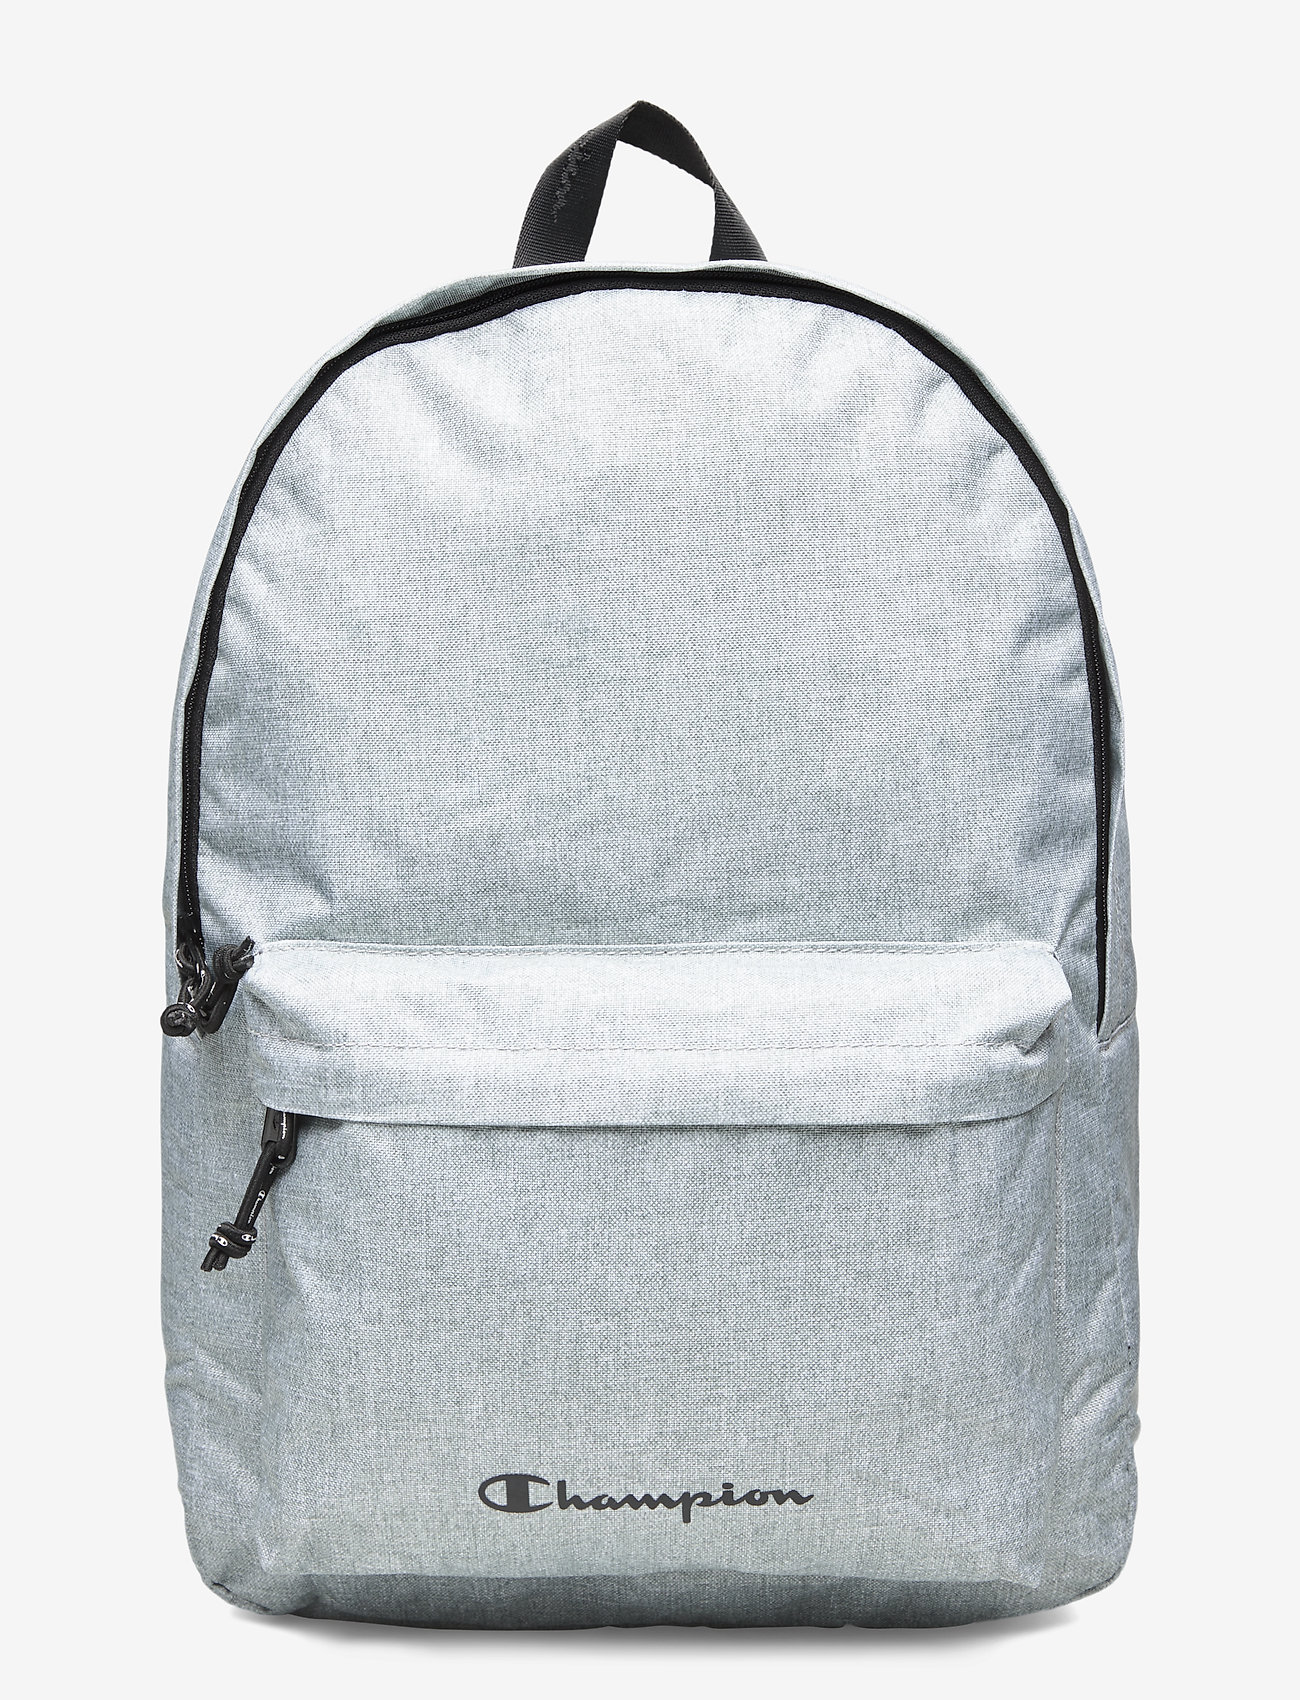 Backpack (Gray Melange Light) (24 